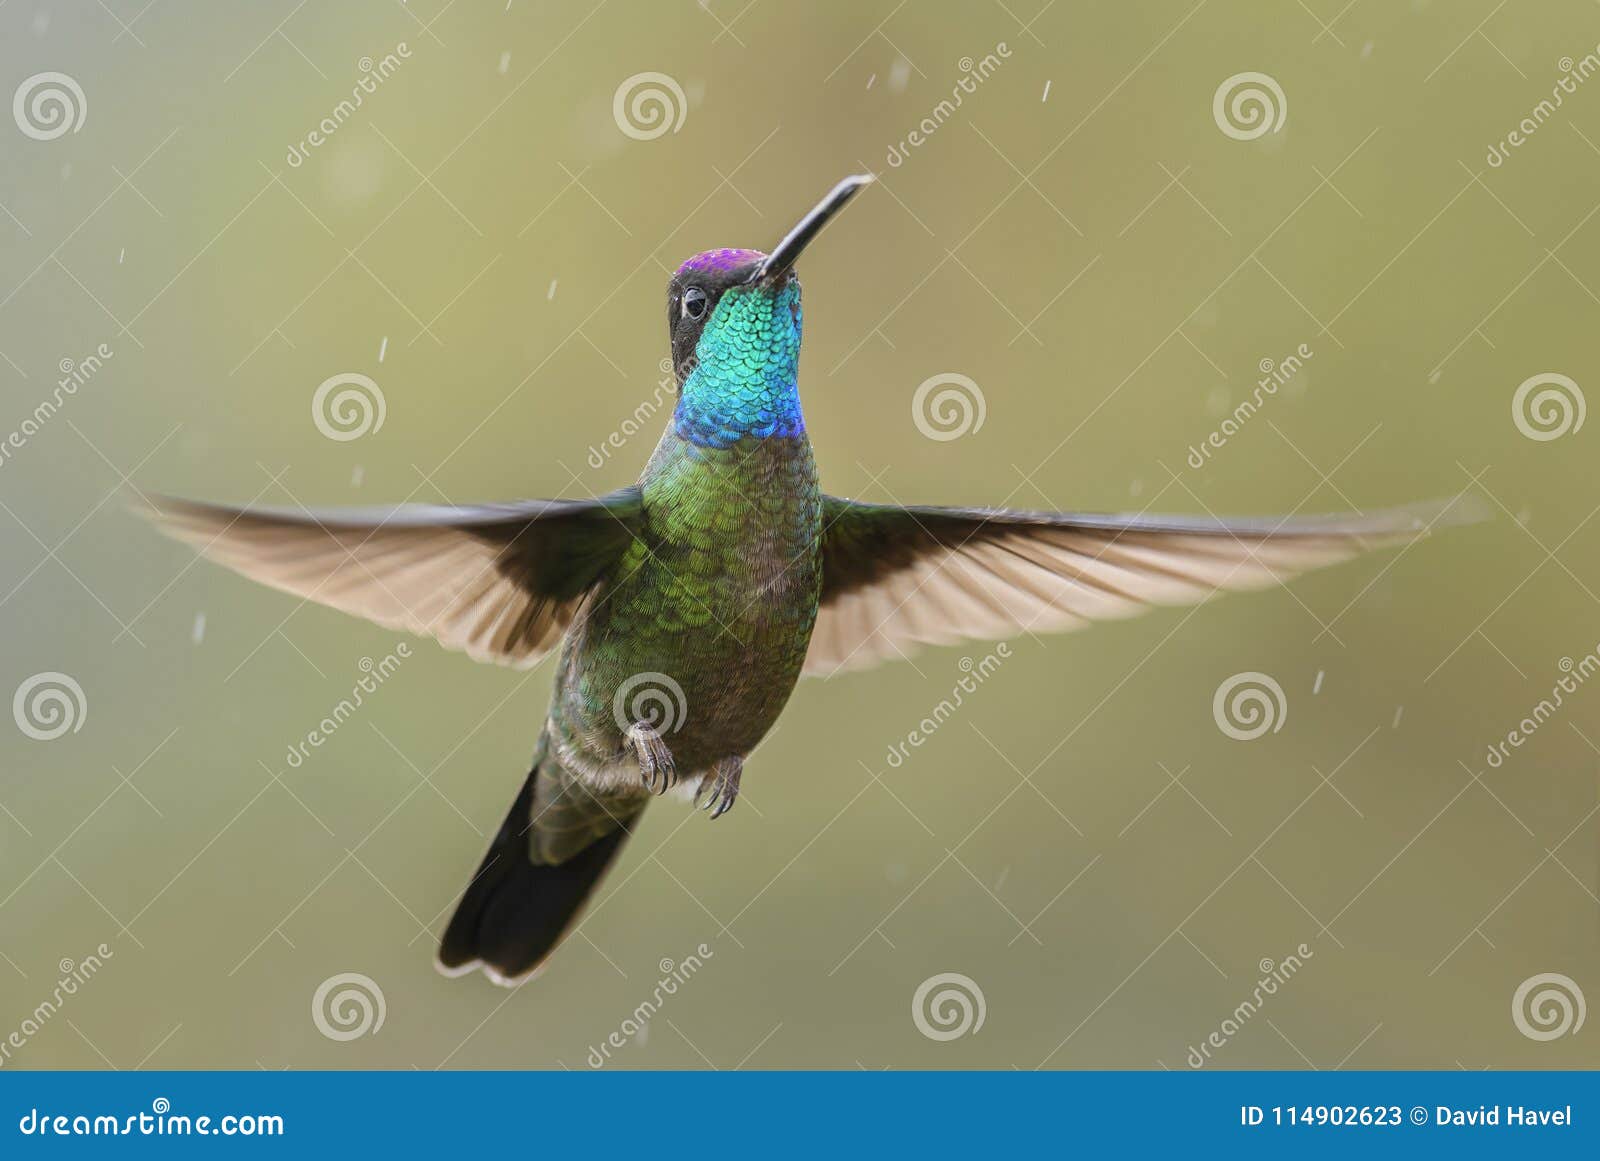 magnificent hummingbird - eugenes fulgens